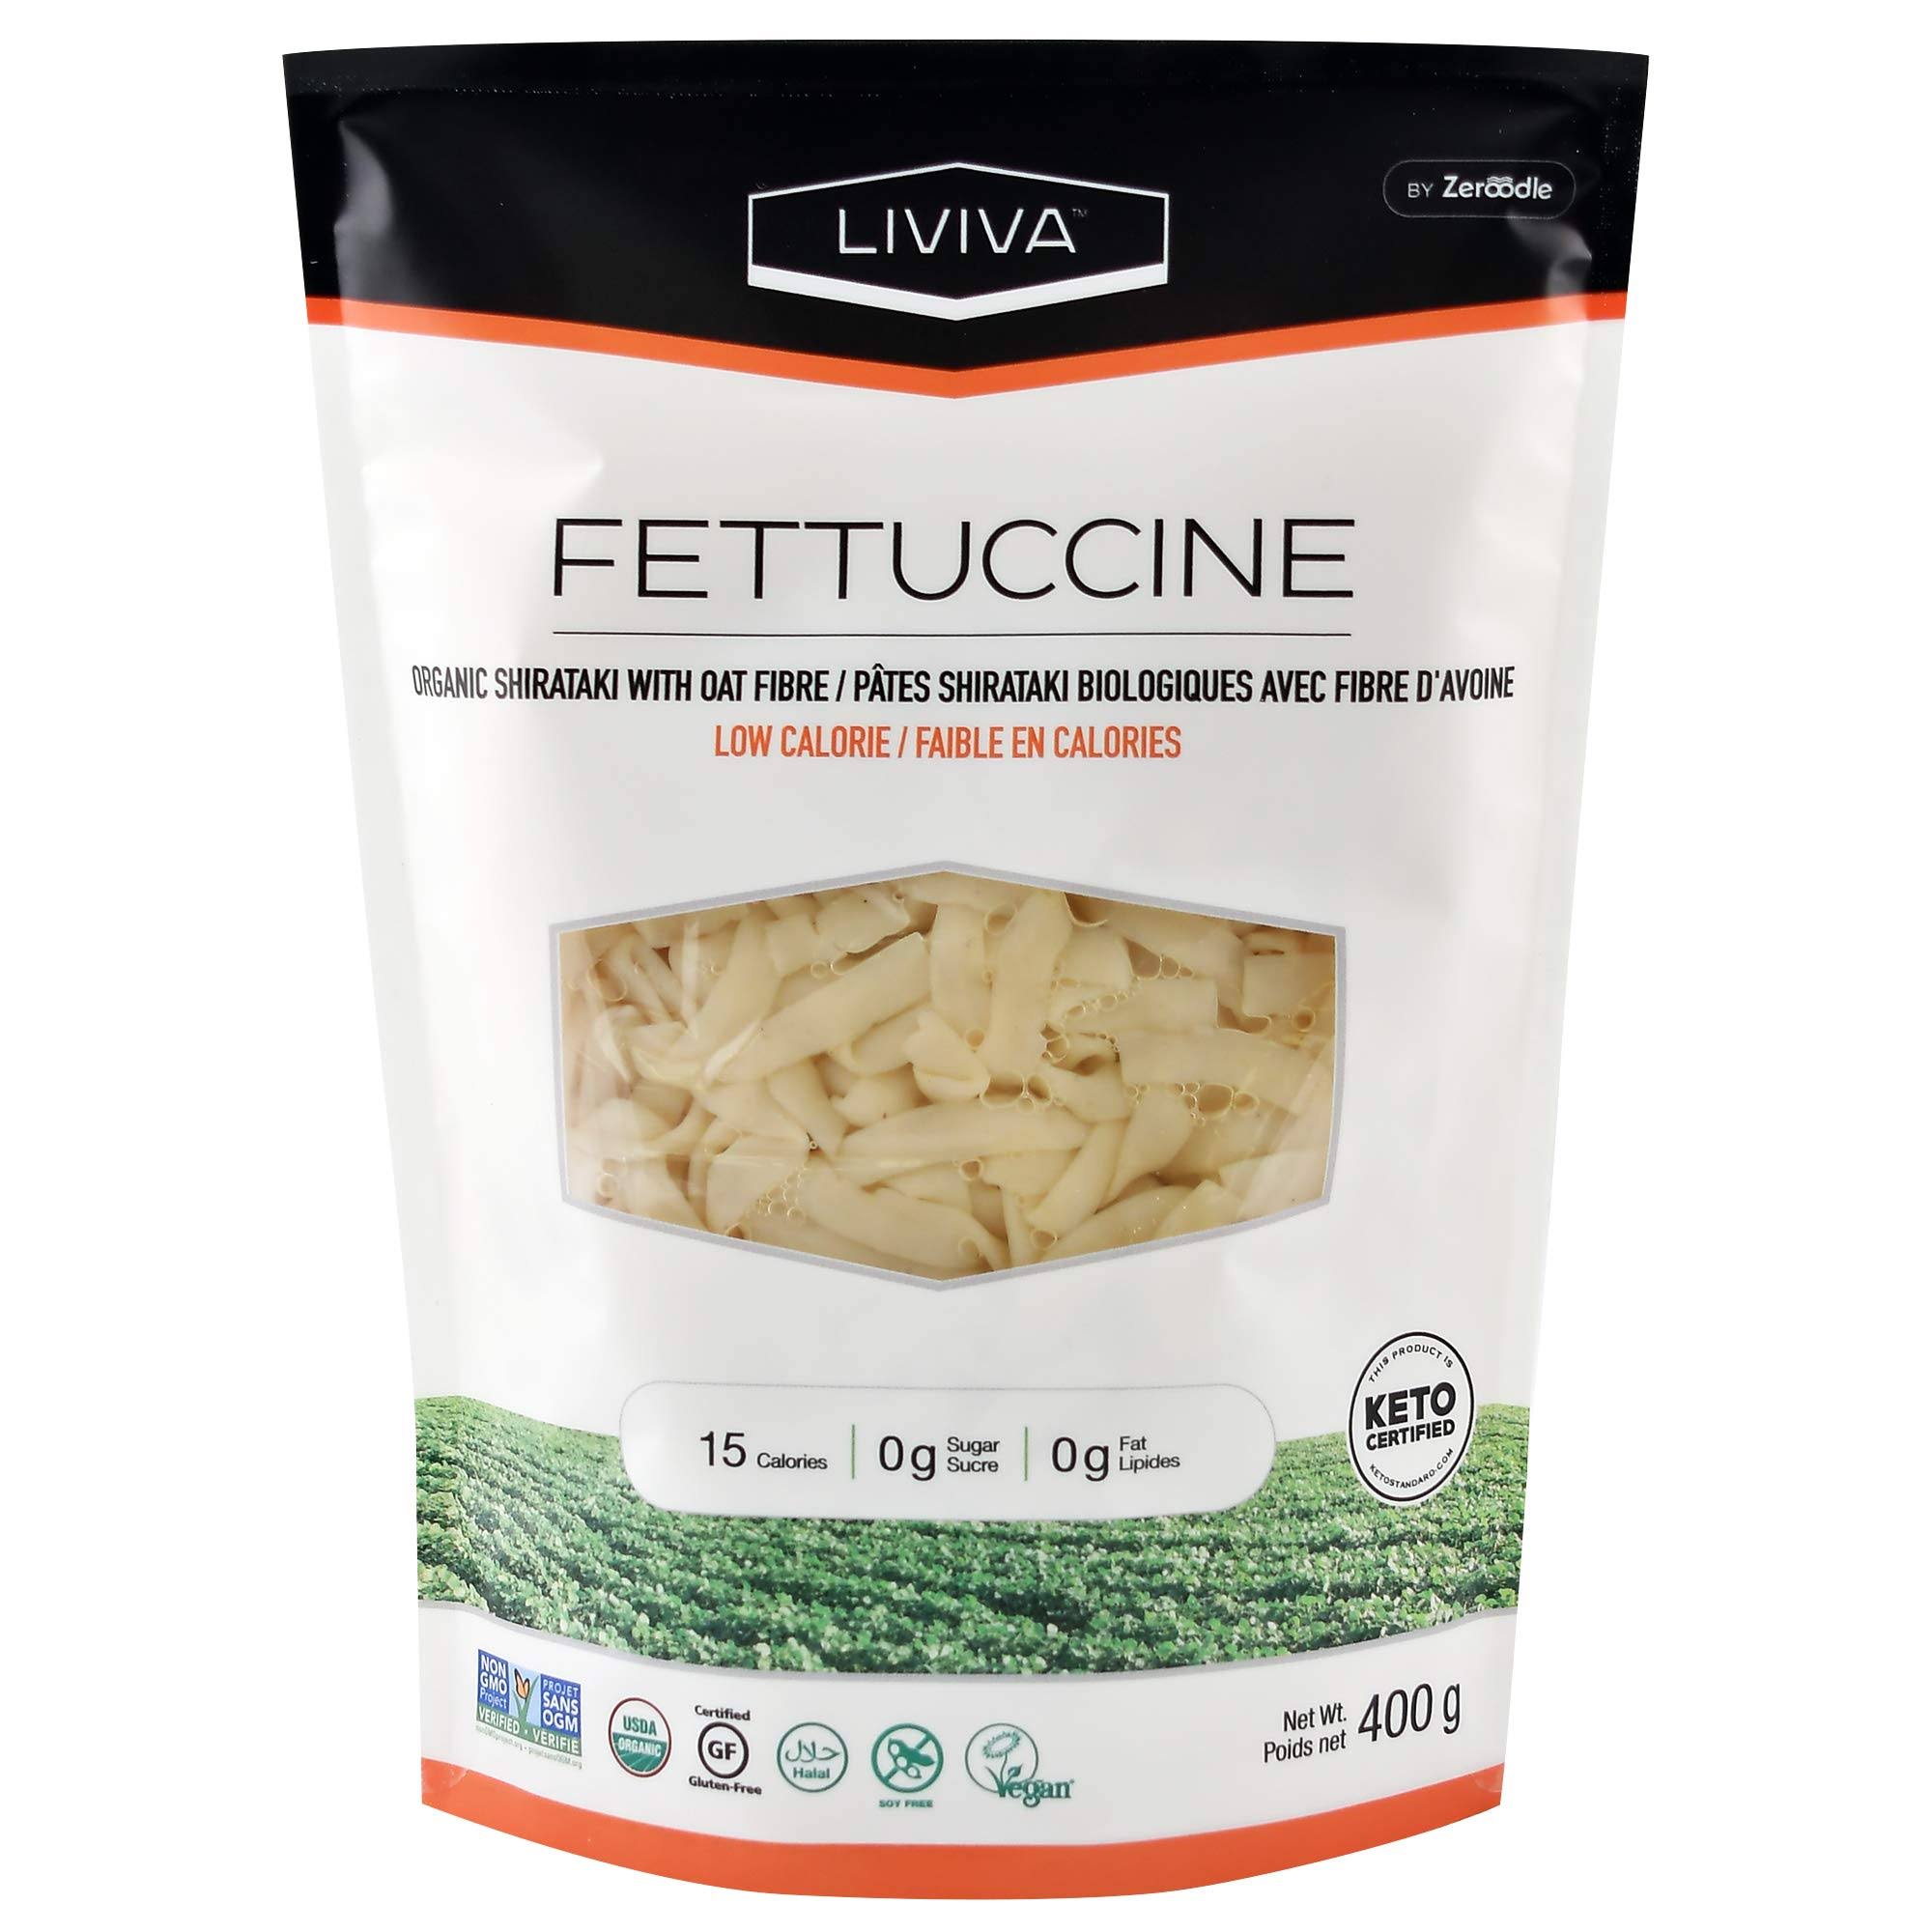 Zeroodle Organic Premium Shirataki Protein Pasta - Fettuccine With Oat Fiber, 14.11oz